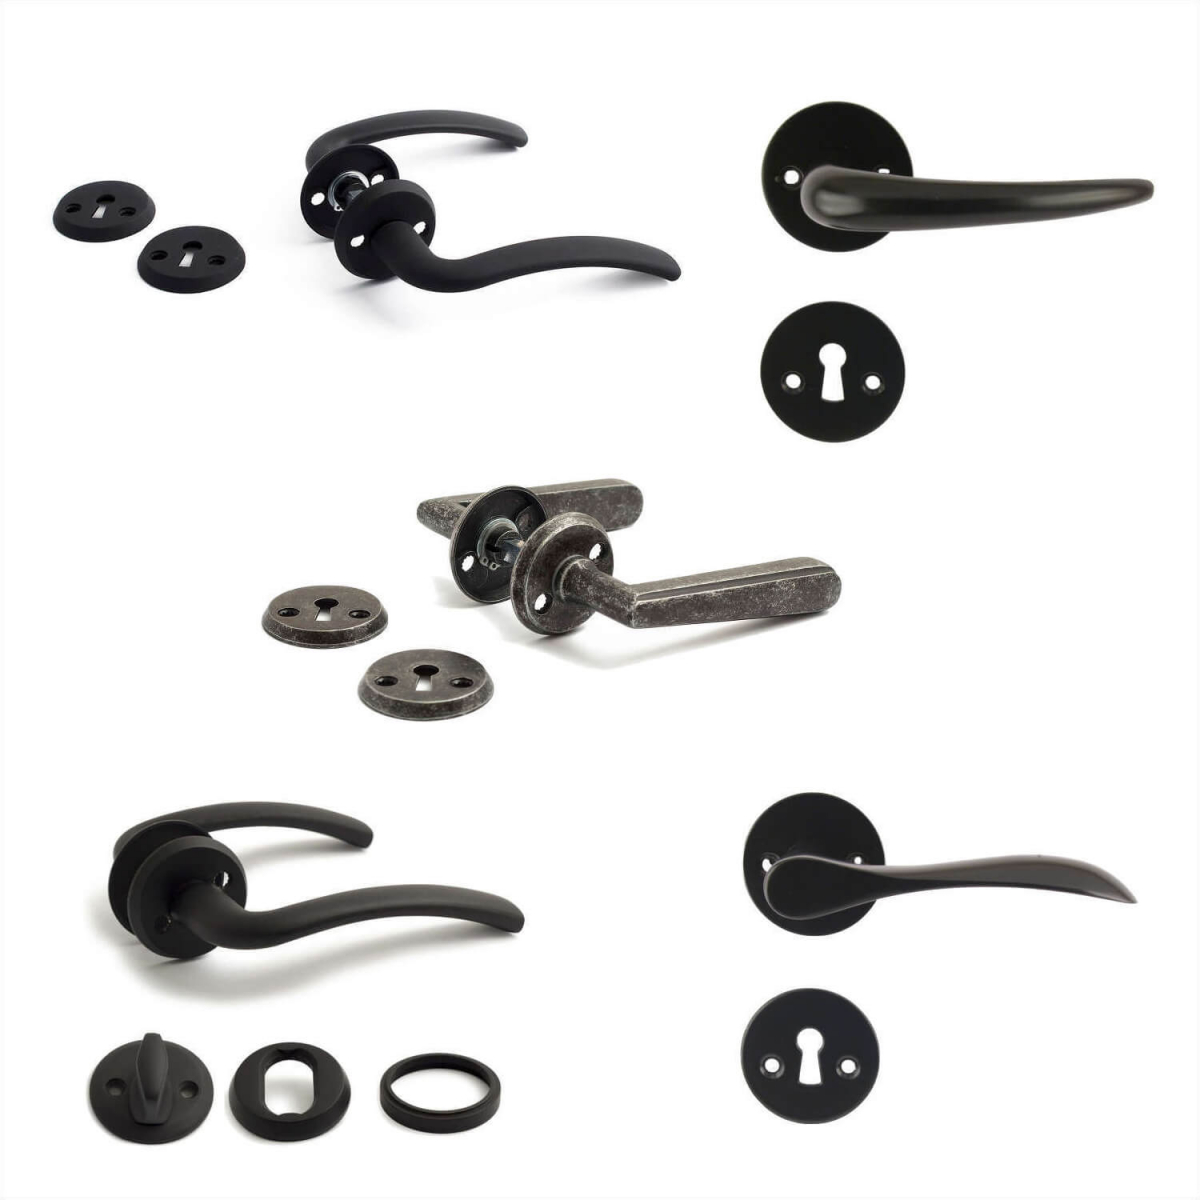 Arne Jacobsen door handle - AJ97 door handle - Brushed steel - small model  cc38mm - Arne Jacobsen door handles - VillaHus